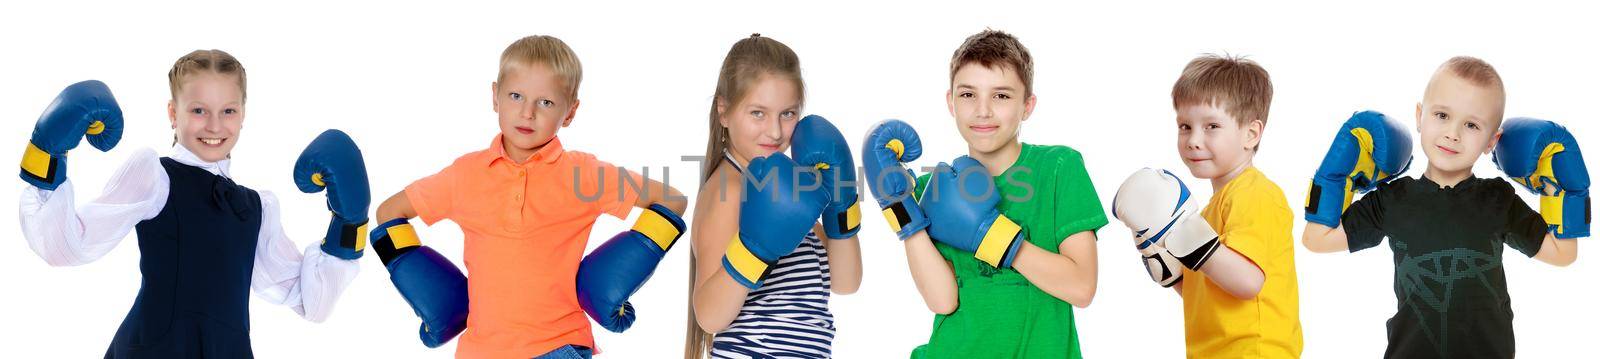 Funny children in boxing gloves. by kolesnikov_studio